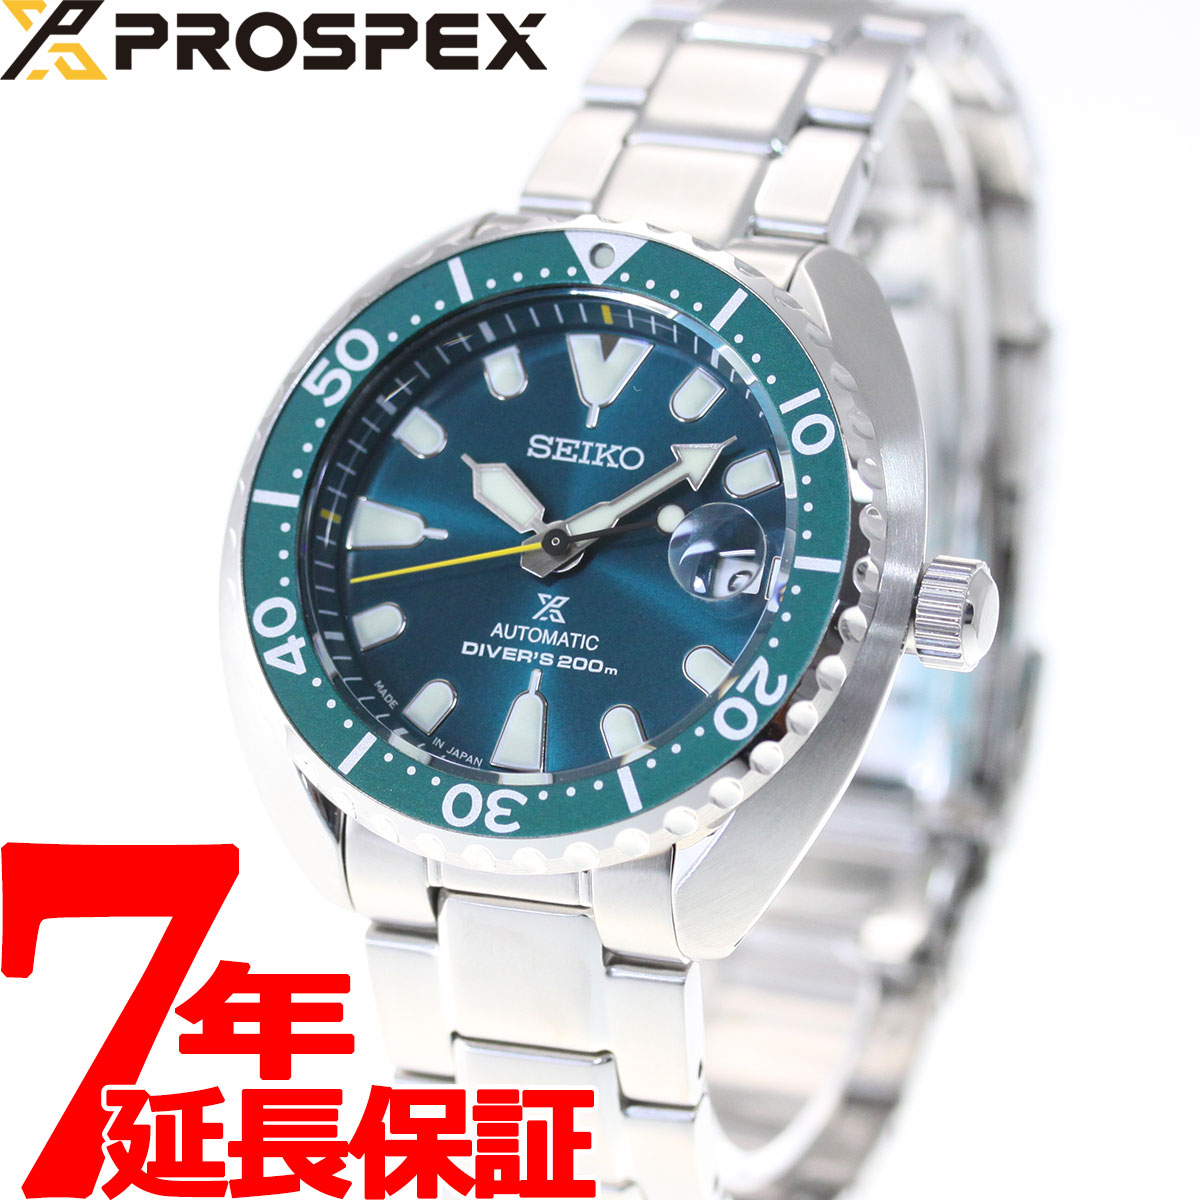  セイコー プロスペックス ミニタートル ダイバースキューバ SEIKO PROSPEX メカニカル 自動巻き ネット流通限定モデル 腕時計 メンズ SBDY083